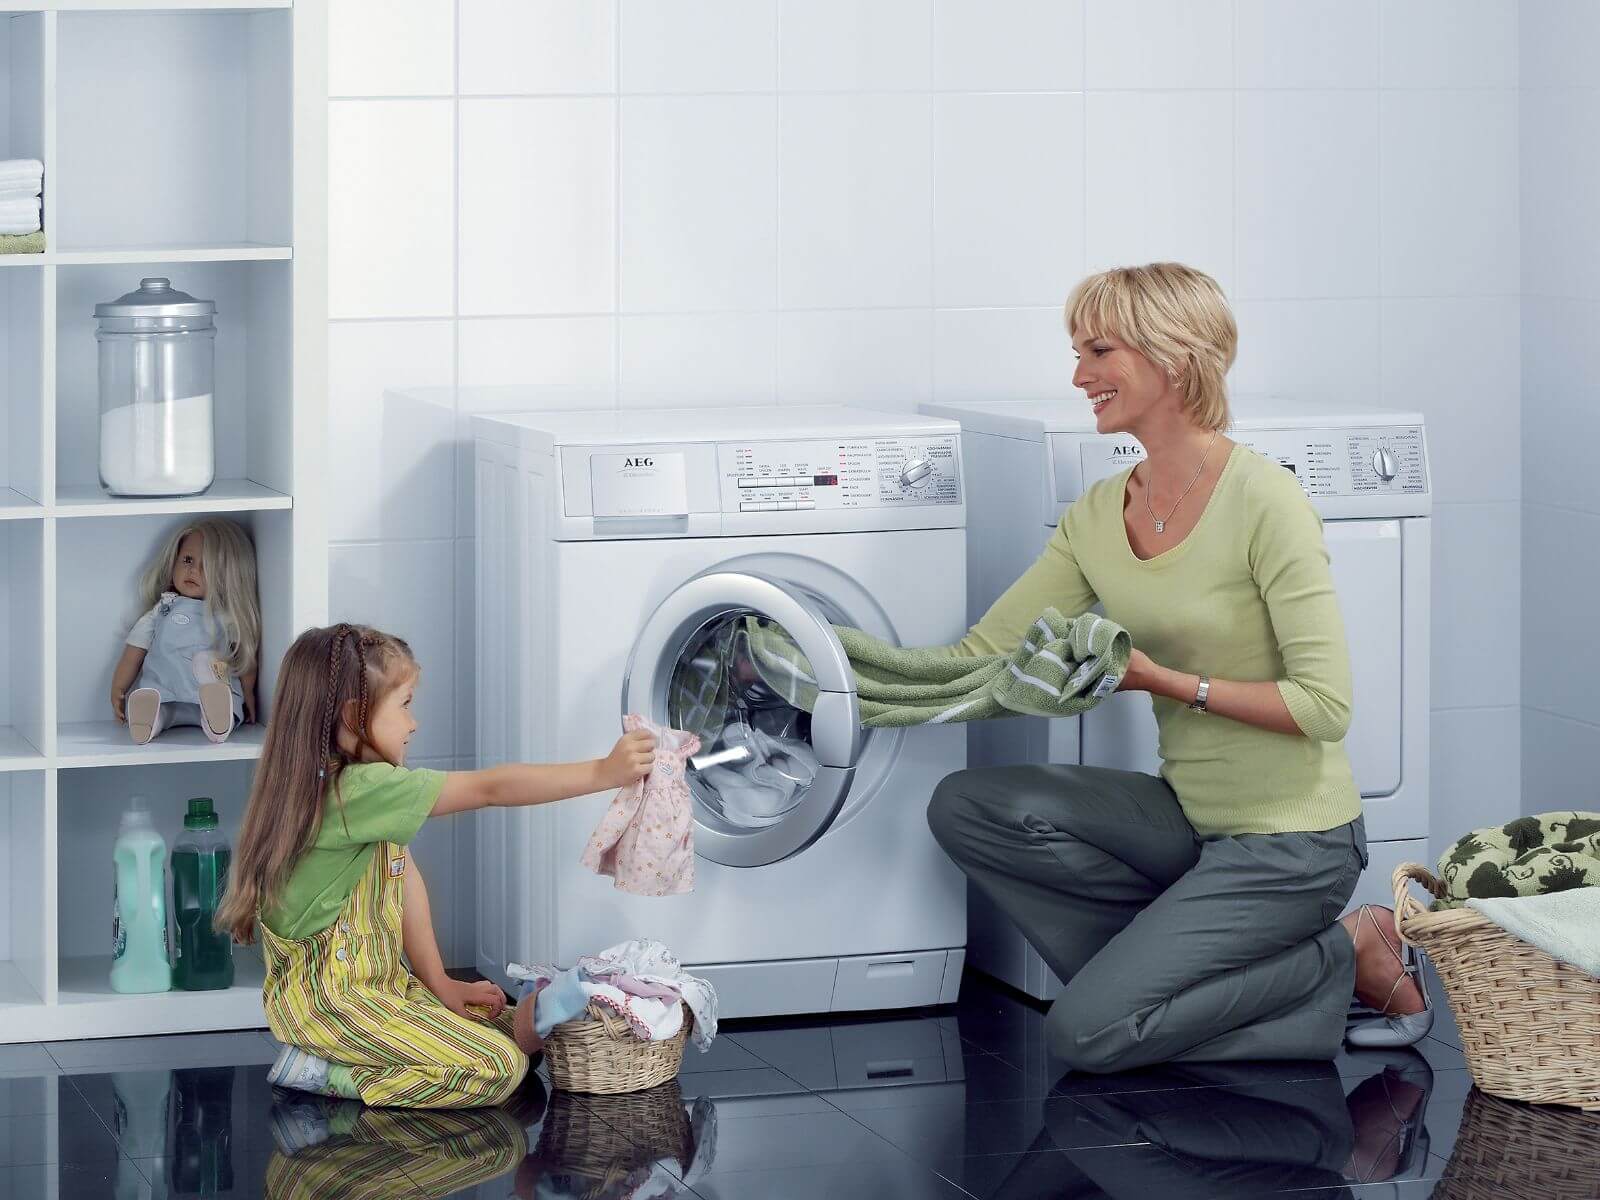 Máy giặt cửa ngang 9kg Bosch được tích hợp nhiều tính năng hiện đại, cực kỳ ưu việt.